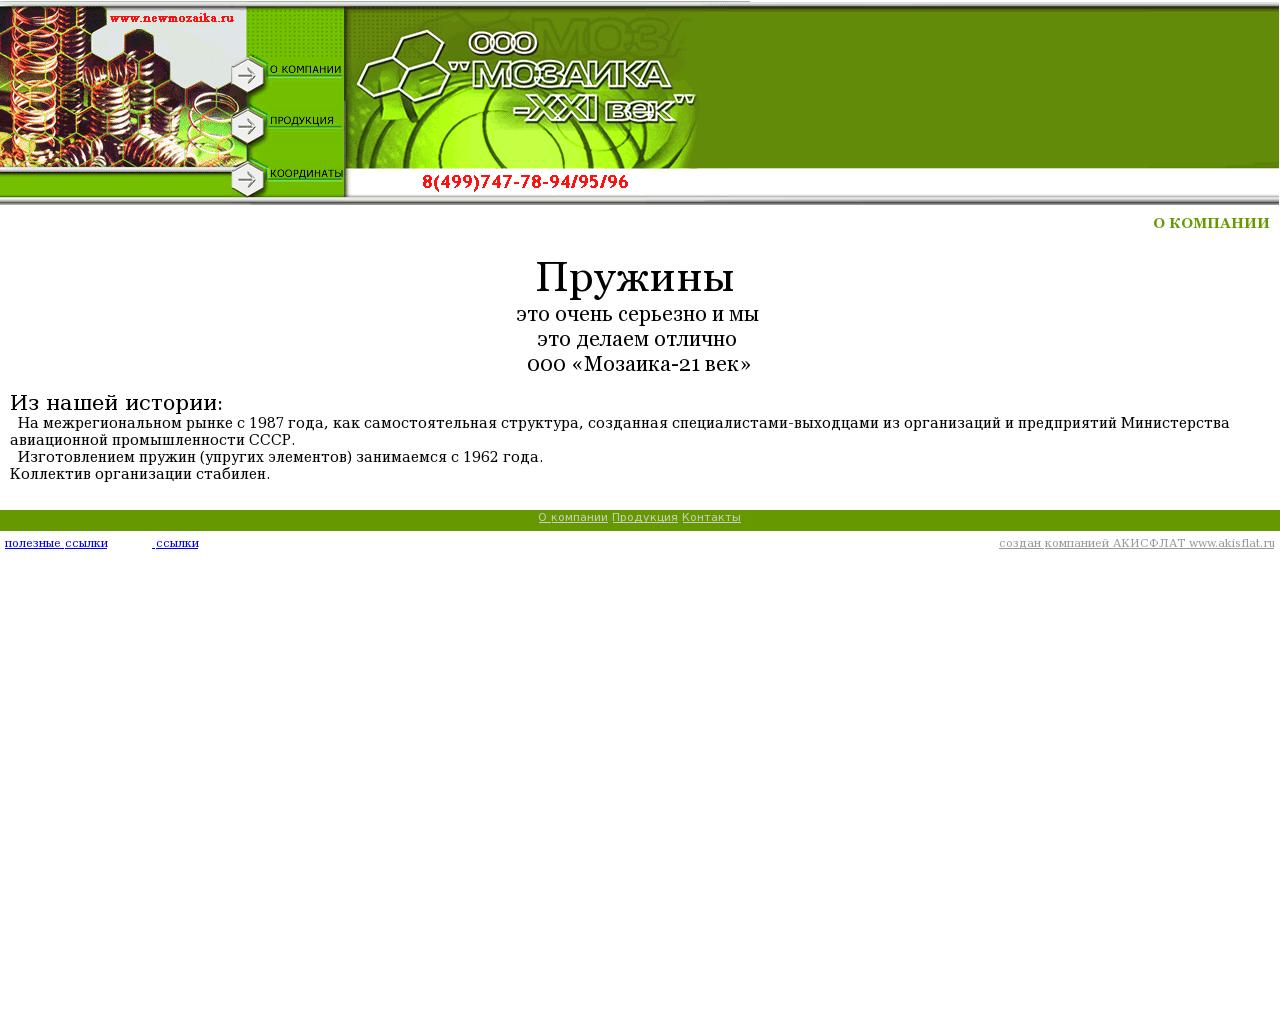 Изображение сайта newmozaika.ru в разрешении 1280x1024